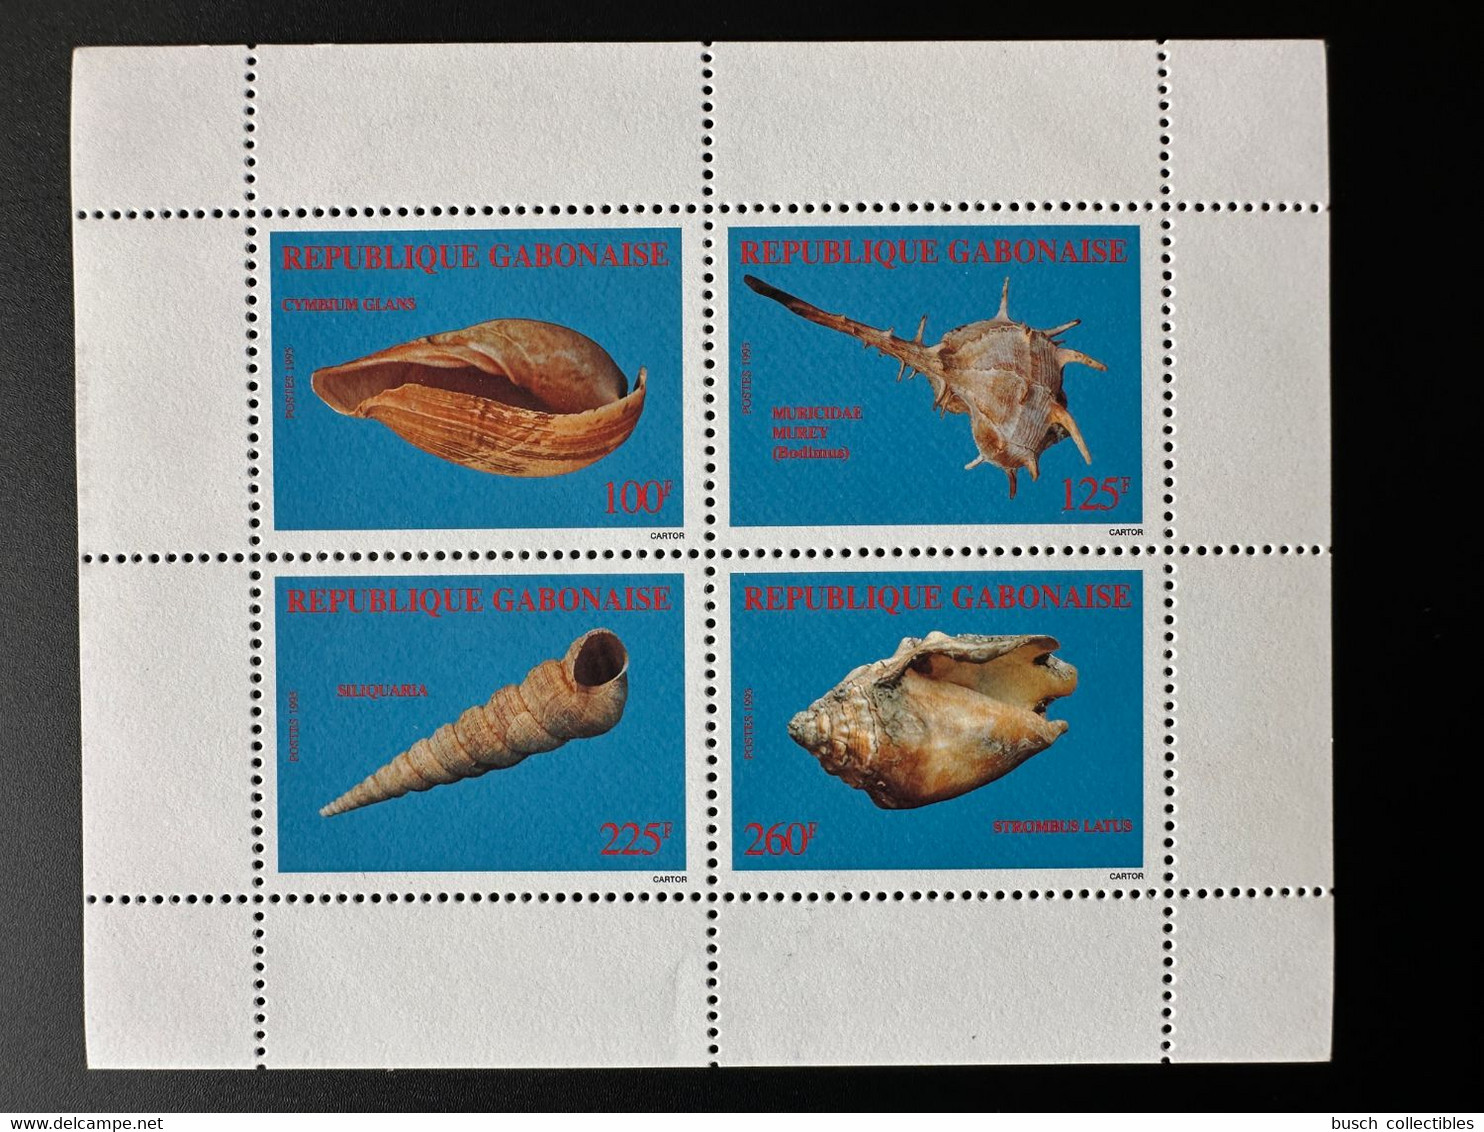 Gabon Gabun 1995 Mi. Bl. 78 Coquillages Shells Crustacés Crustaceans RARE ! - Muscheln